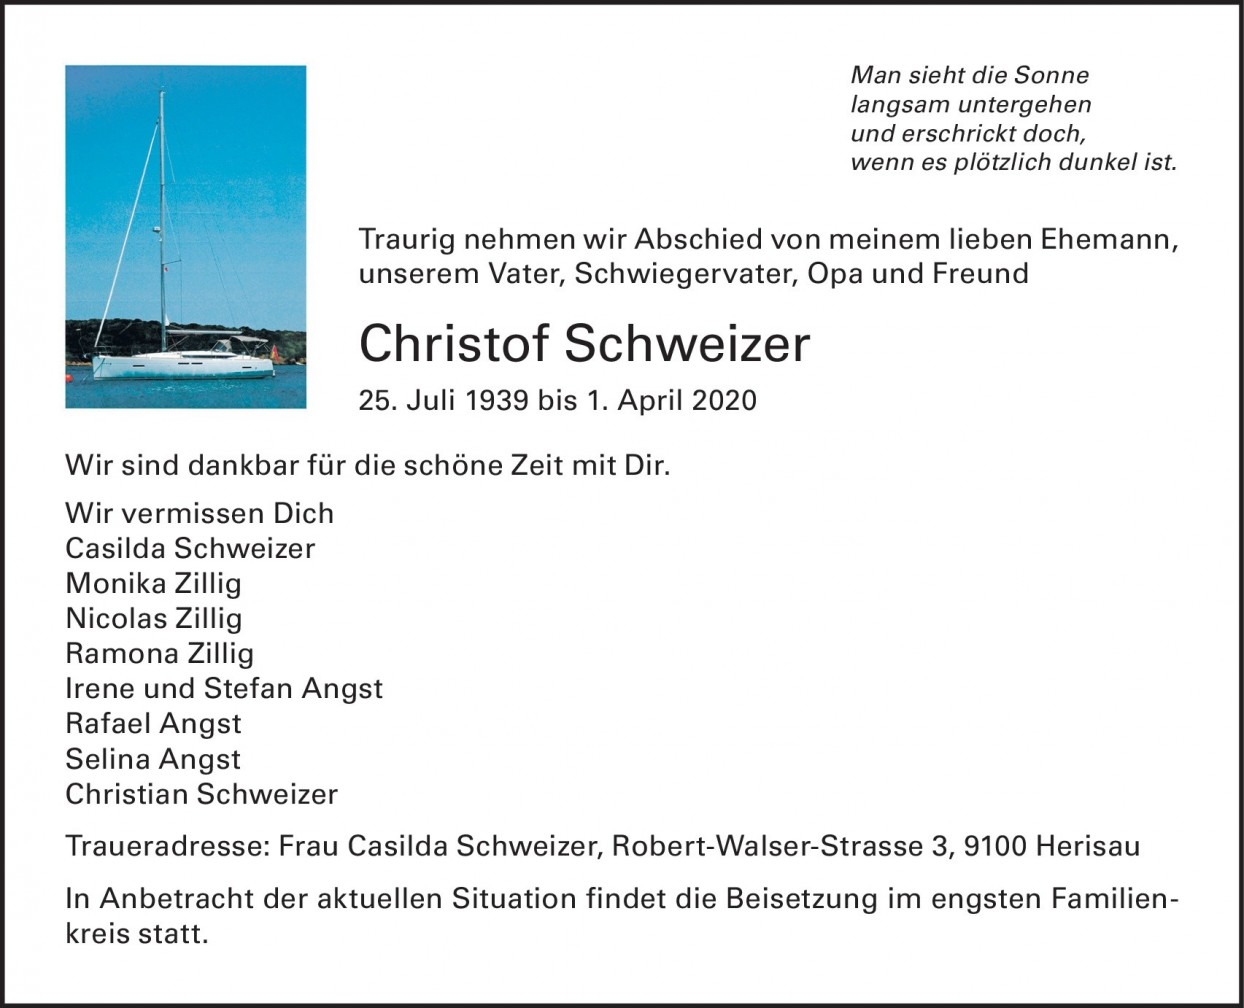 Christof Schweizer